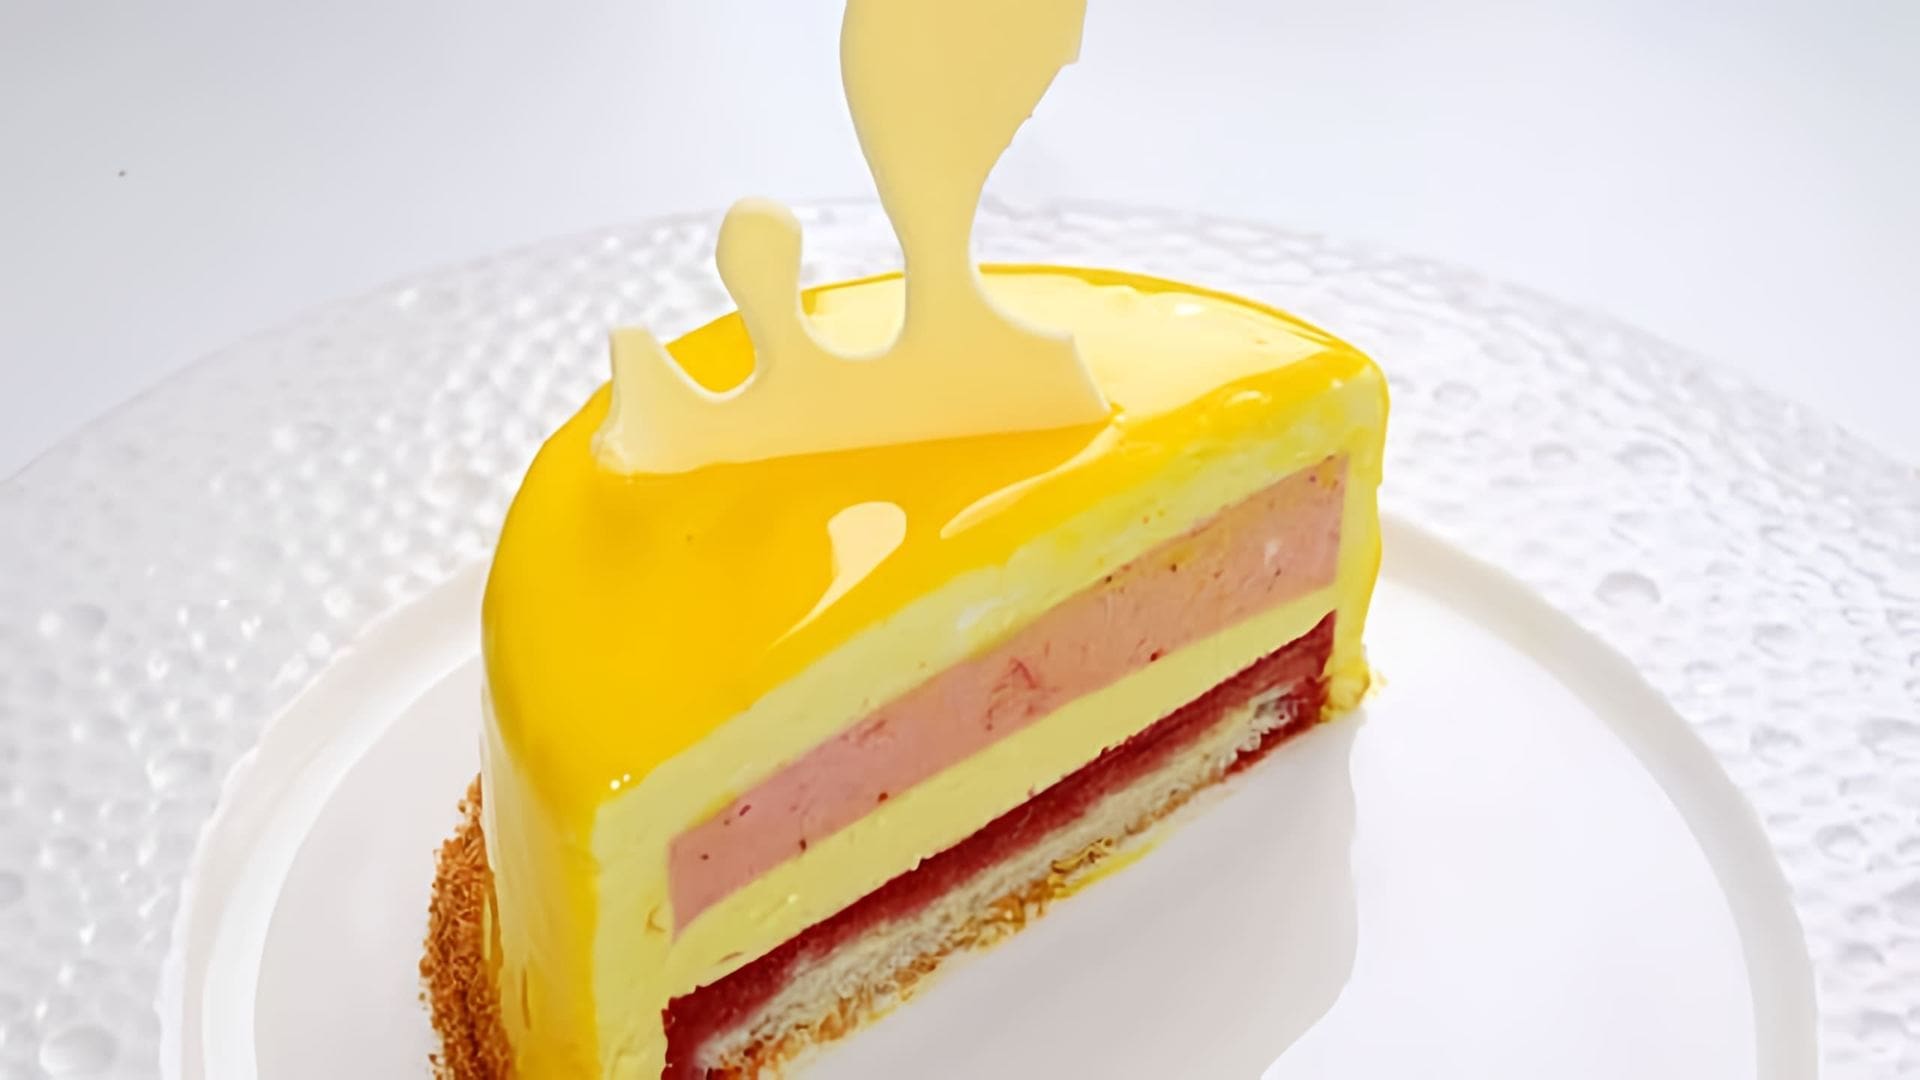 В этом видео демонстрируется процесс приготовления муссового лимонно-клубничного торта